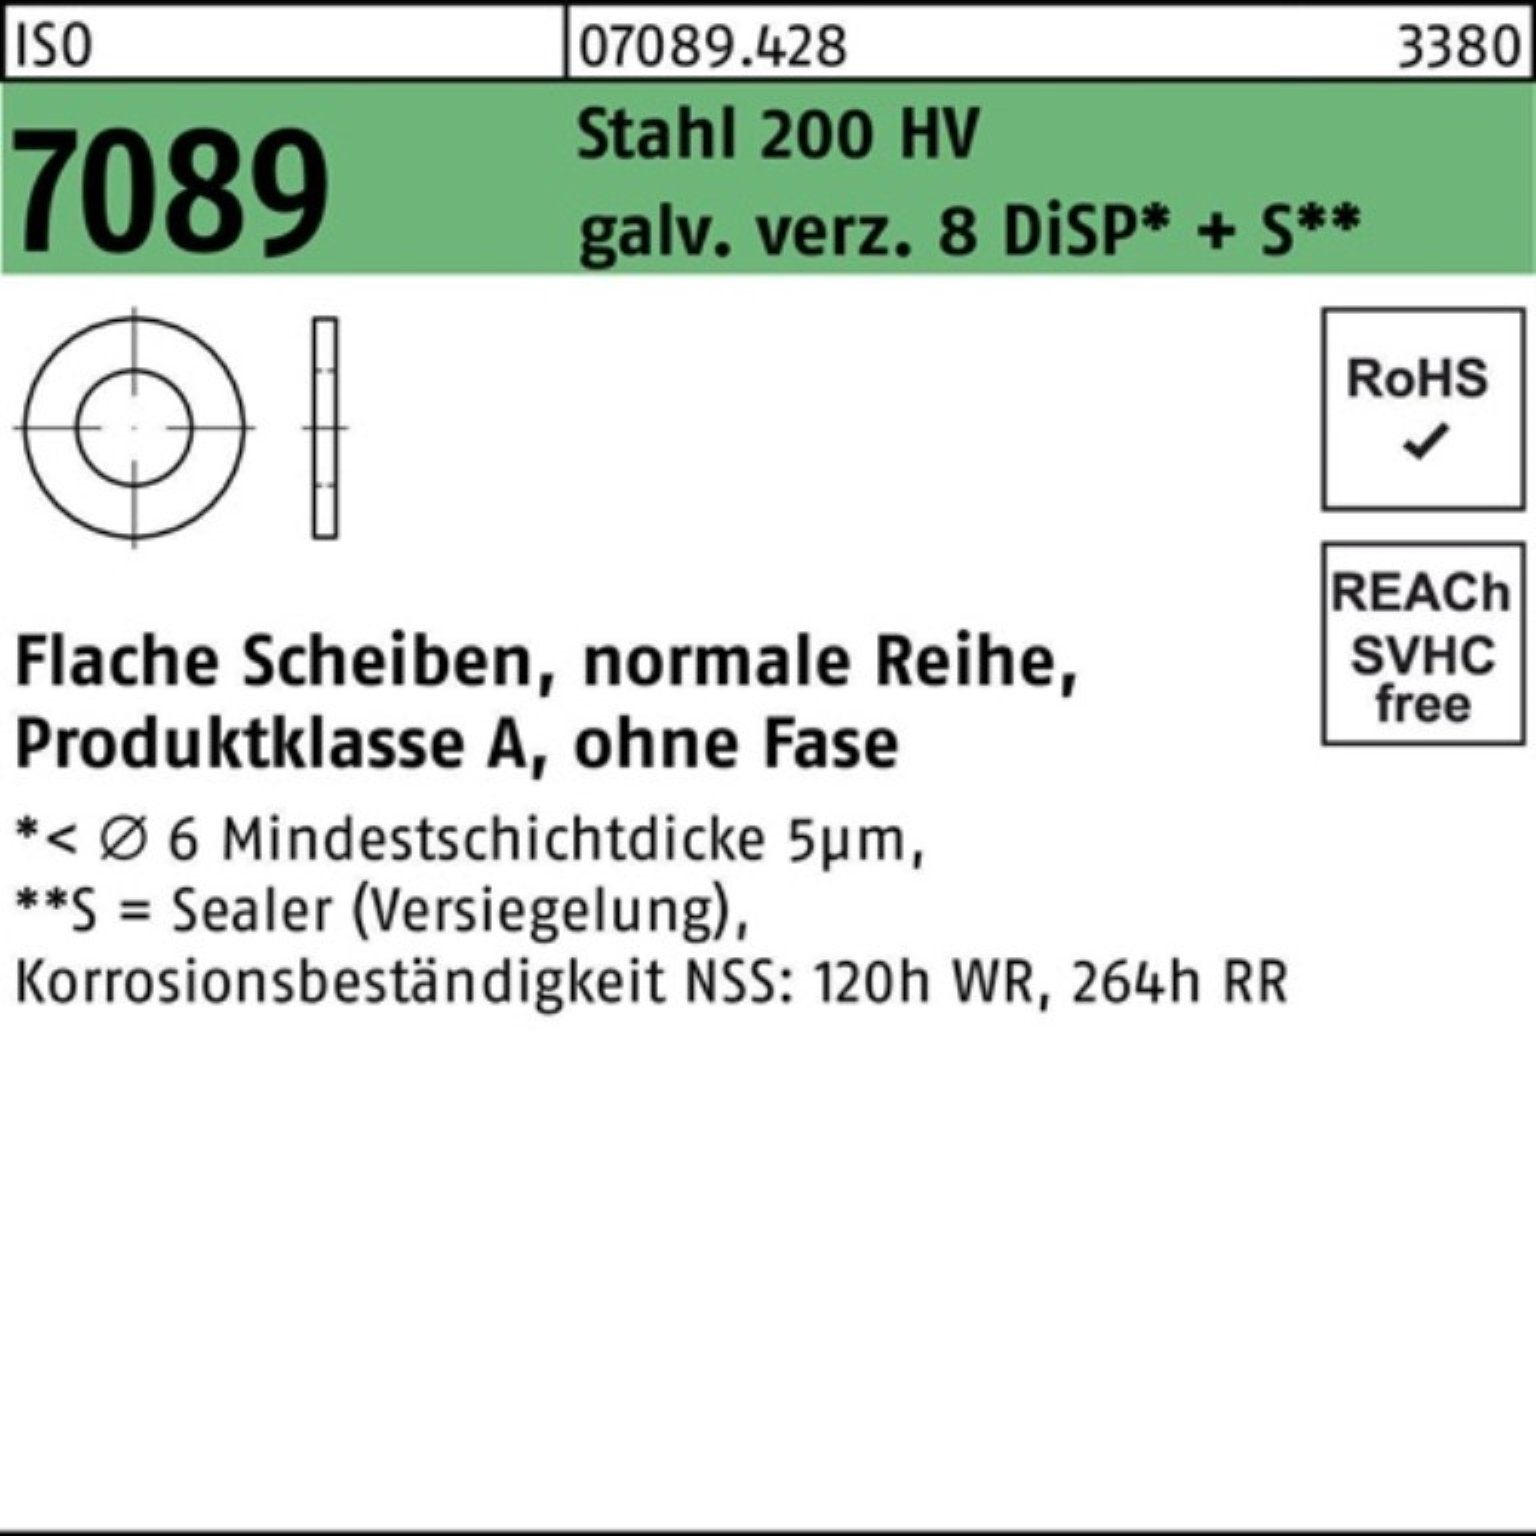 Bufab Unterlegscheibe 1000er Pack 7089 ISO galv.verz. 3 o.Fase Stahl HV 200 Unterlegscheibe